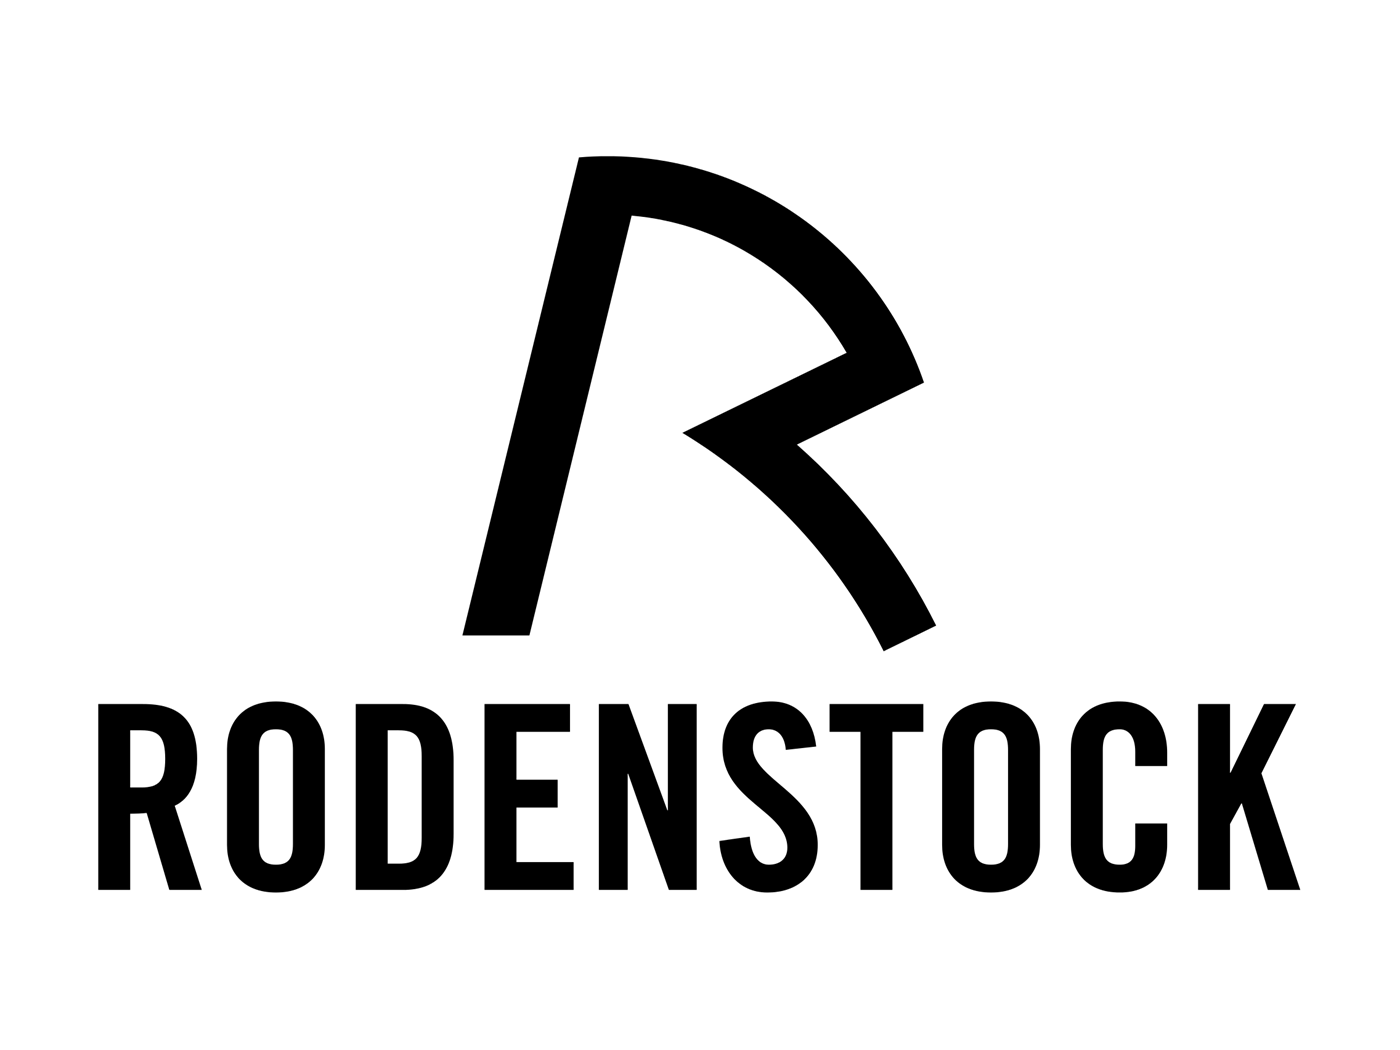 Rodenstock-logo-wordmark.png